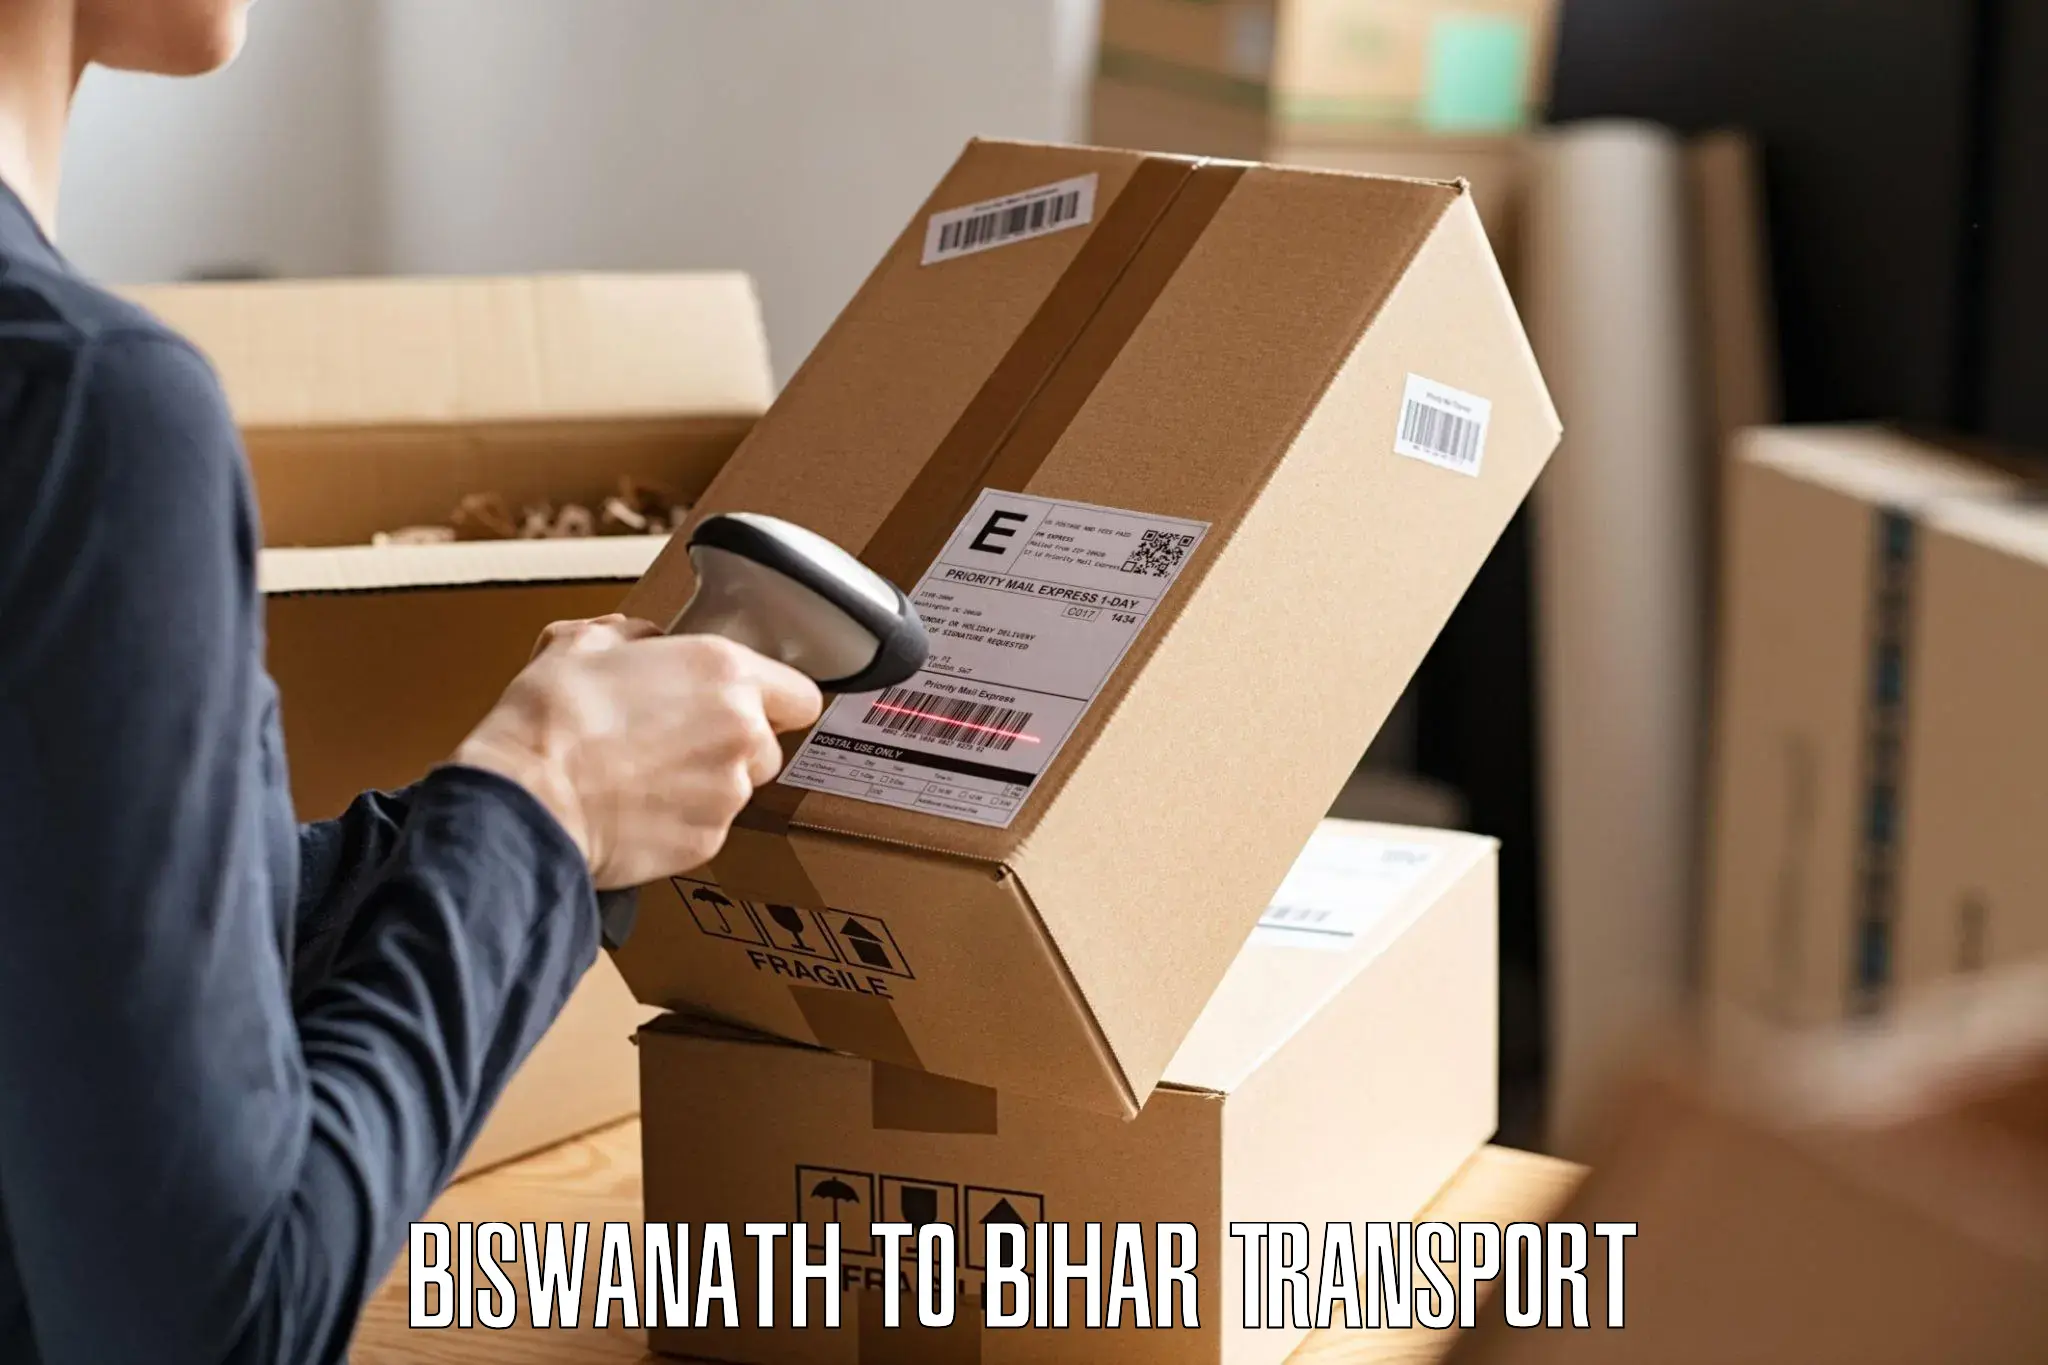 Nearest transport service Biswanath to Benipur